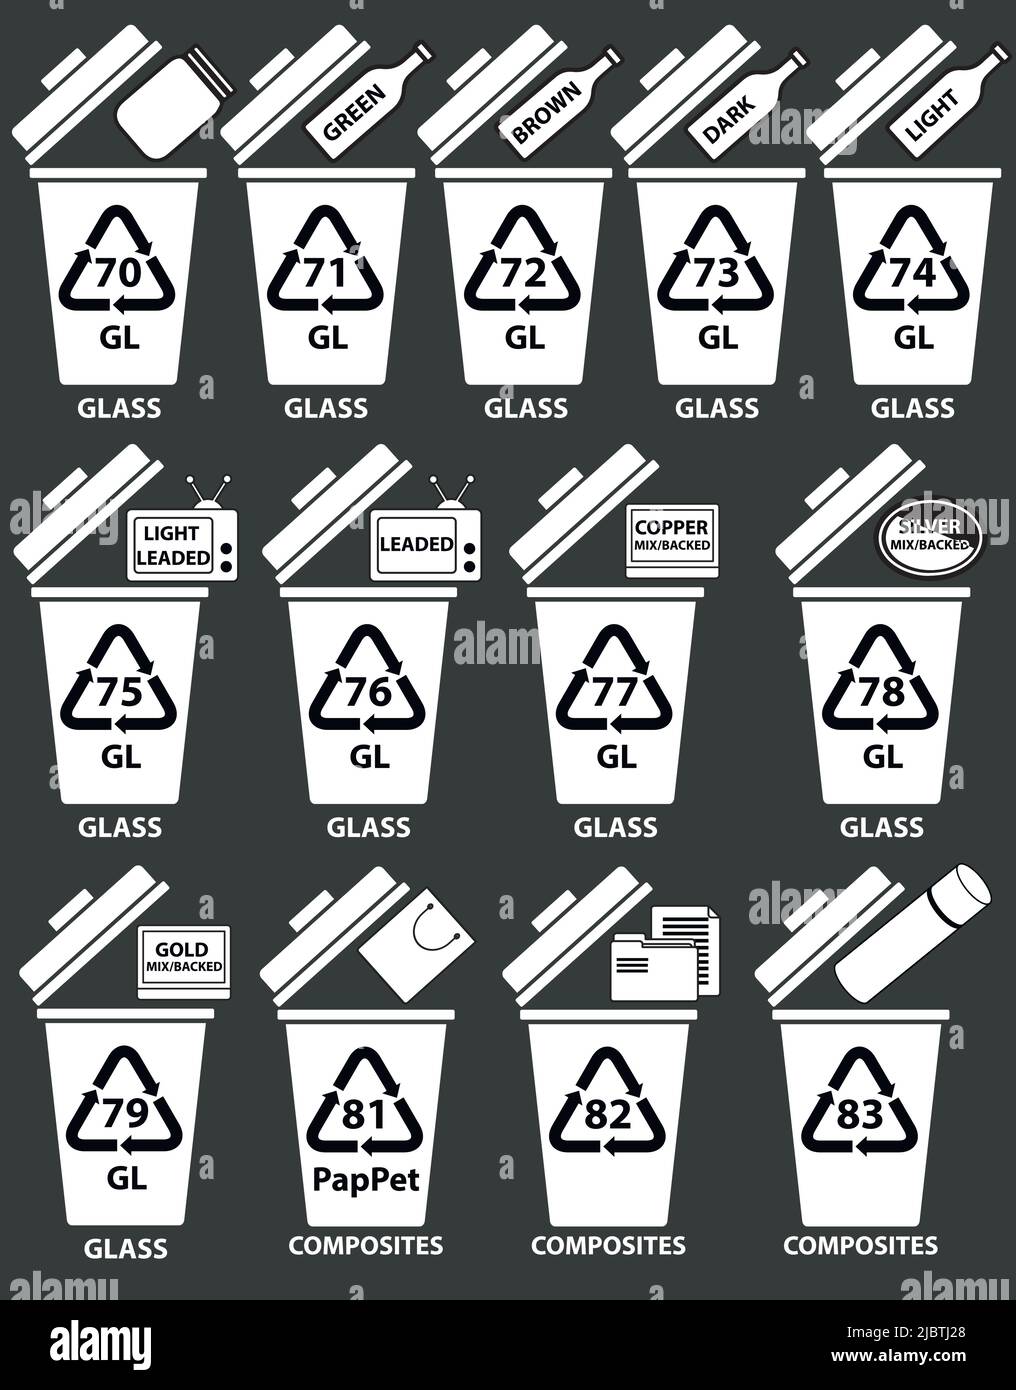 Recycling-Codes für Glasverbundwerkstoffe. Recycling-Behälter Abbildung mit Flaschen, tv-Glas, Papierbeutel. Recycelte Abfallbehälter mit Beispielen und Zahlen. Stock Vektor